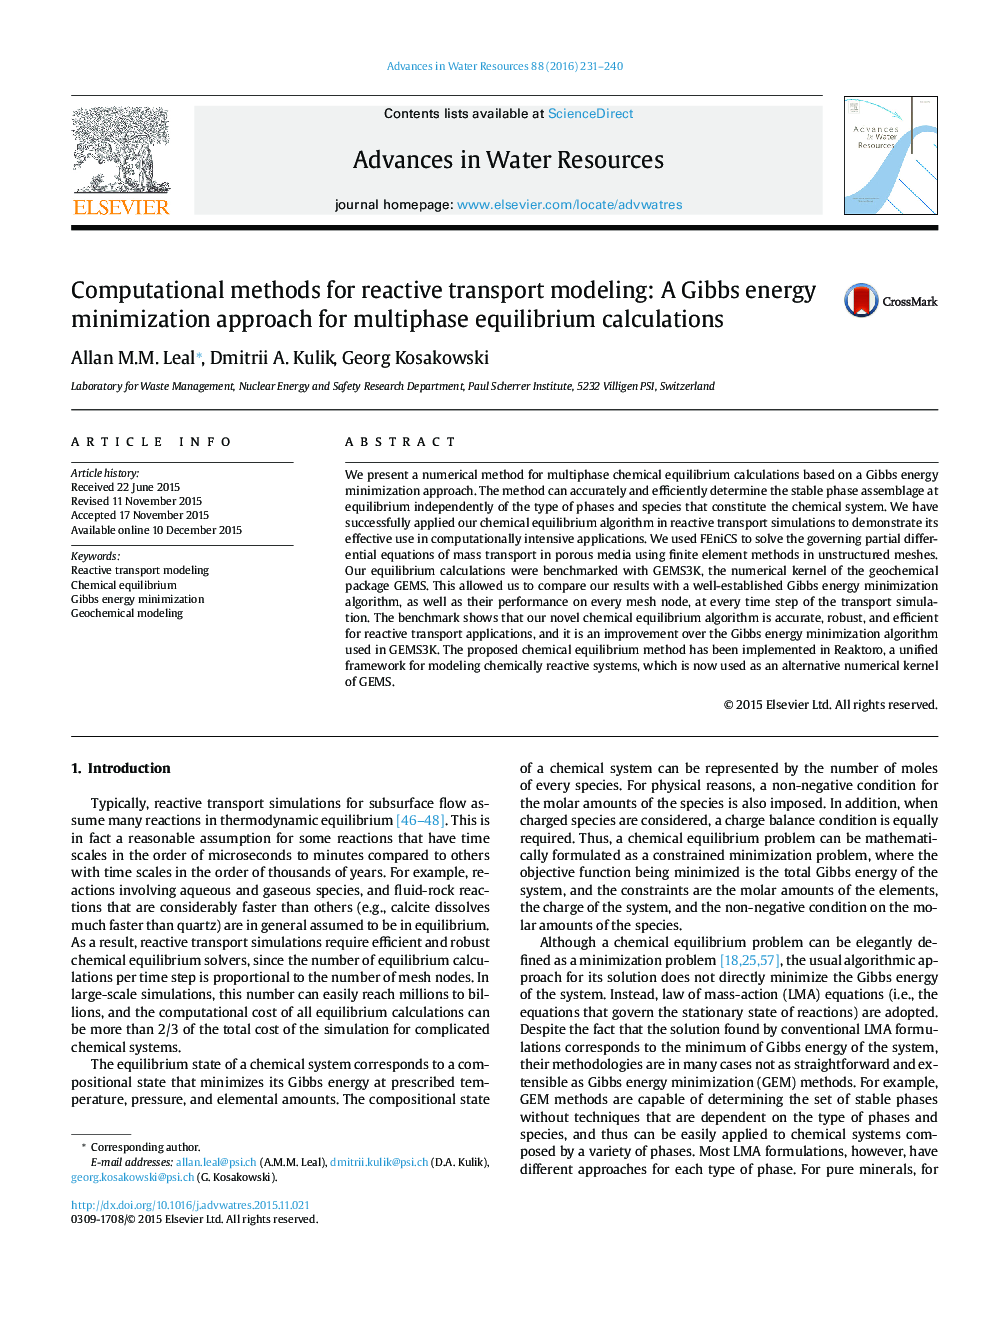 روشهای محاسباتی برای مدلسازی حمل و نقل واکنش: رویکرد بهینه سازی انرژی گیبس برای محاسبات تعادل چند مرحلهای 